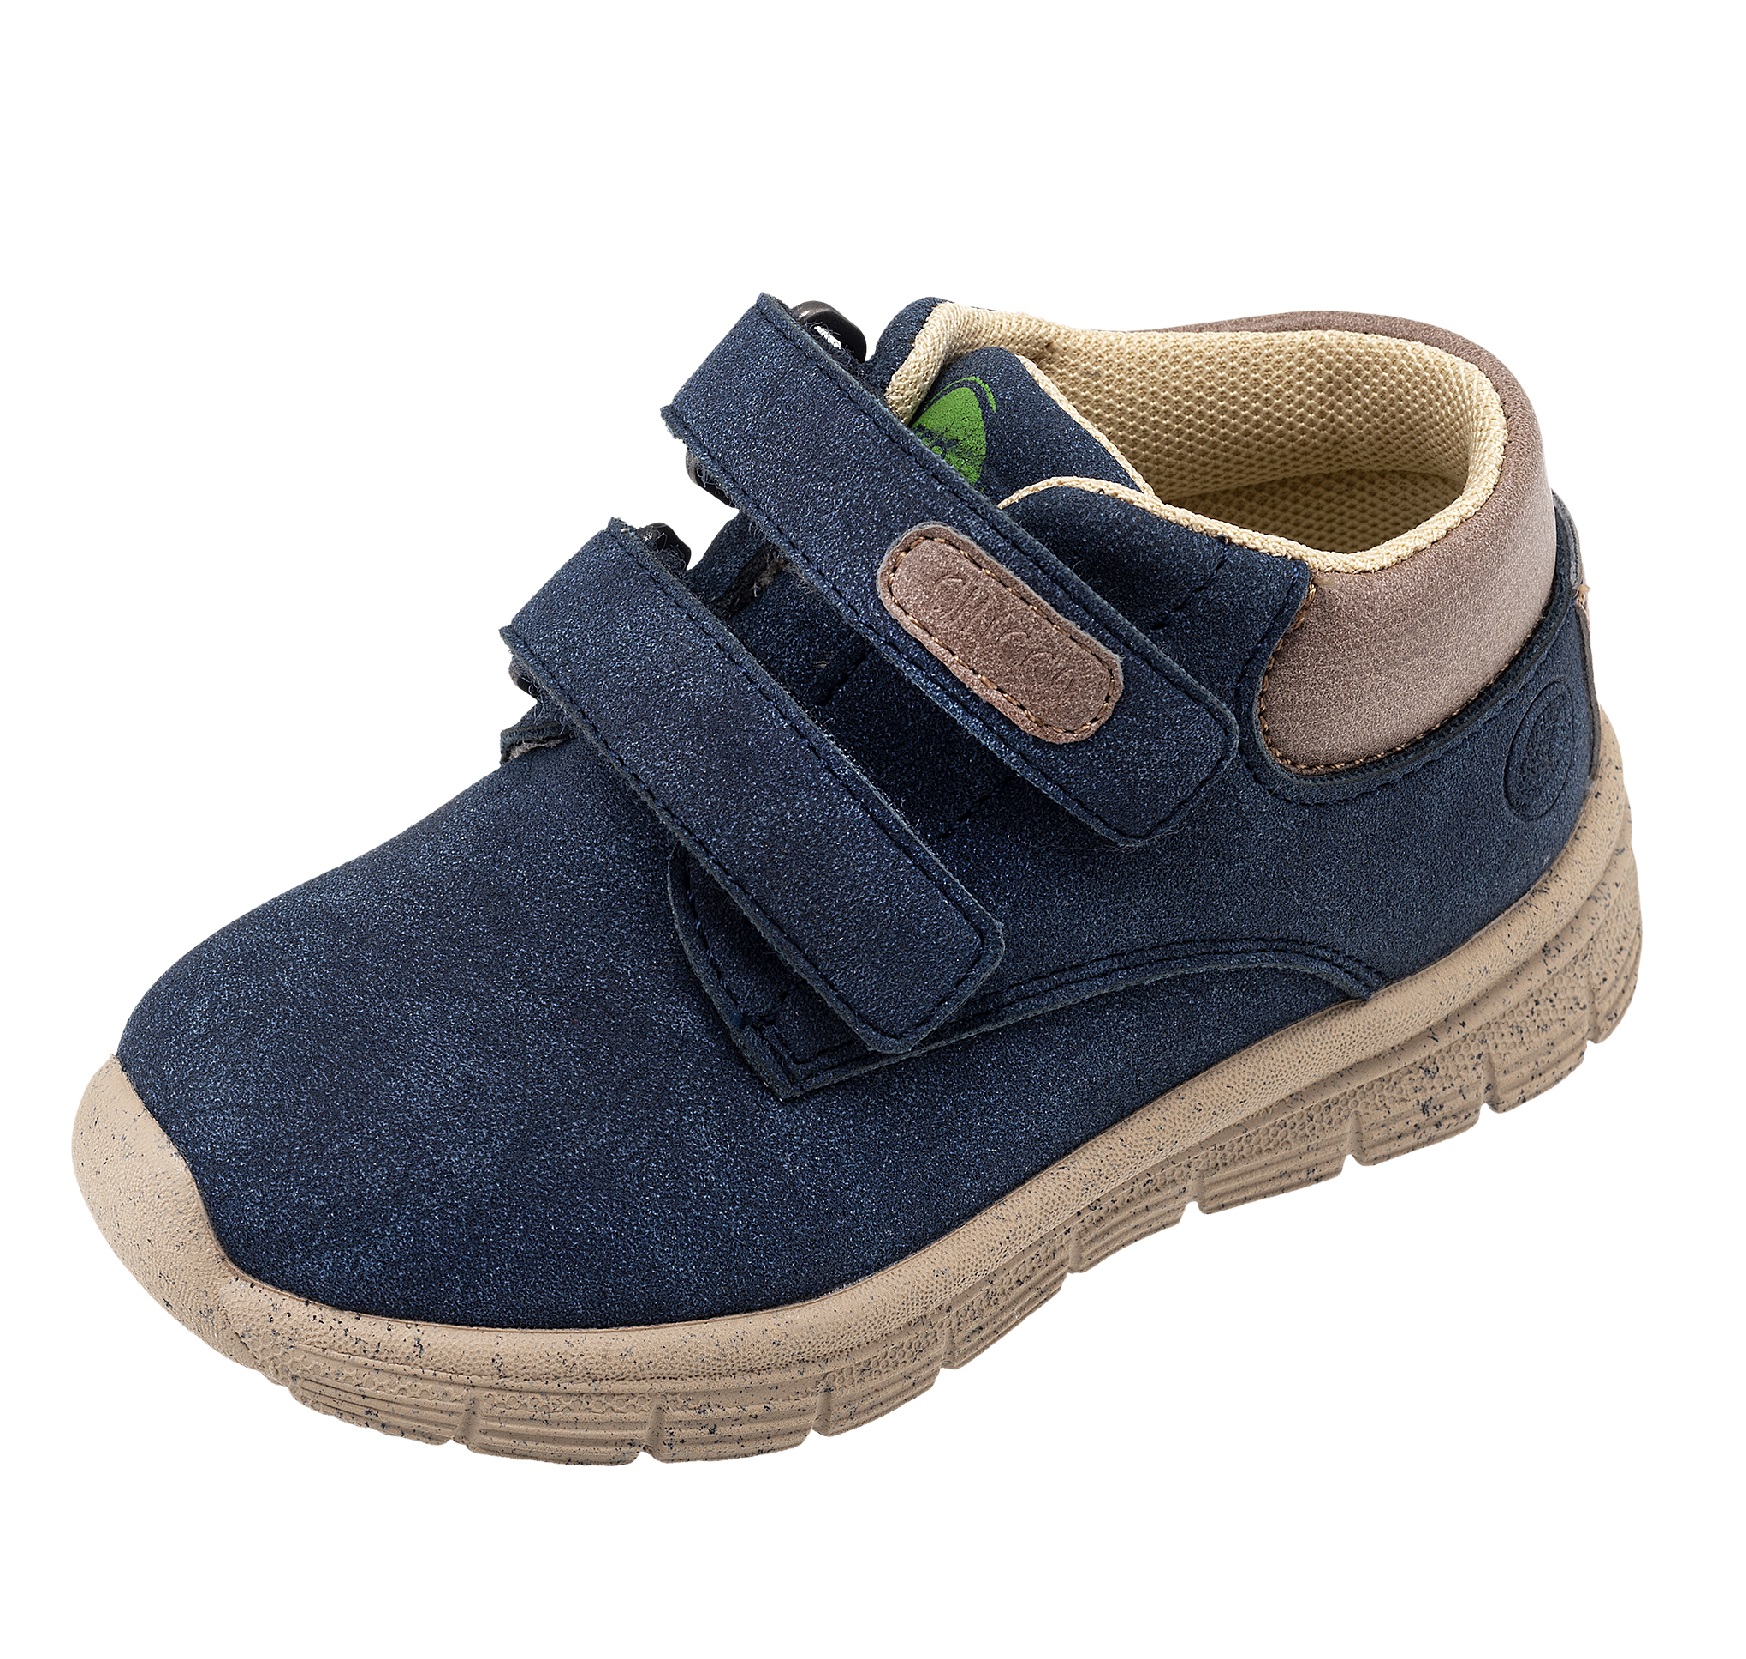 Pantofi copii Chicco Chios, 66153-61P, Albastru CHICCO